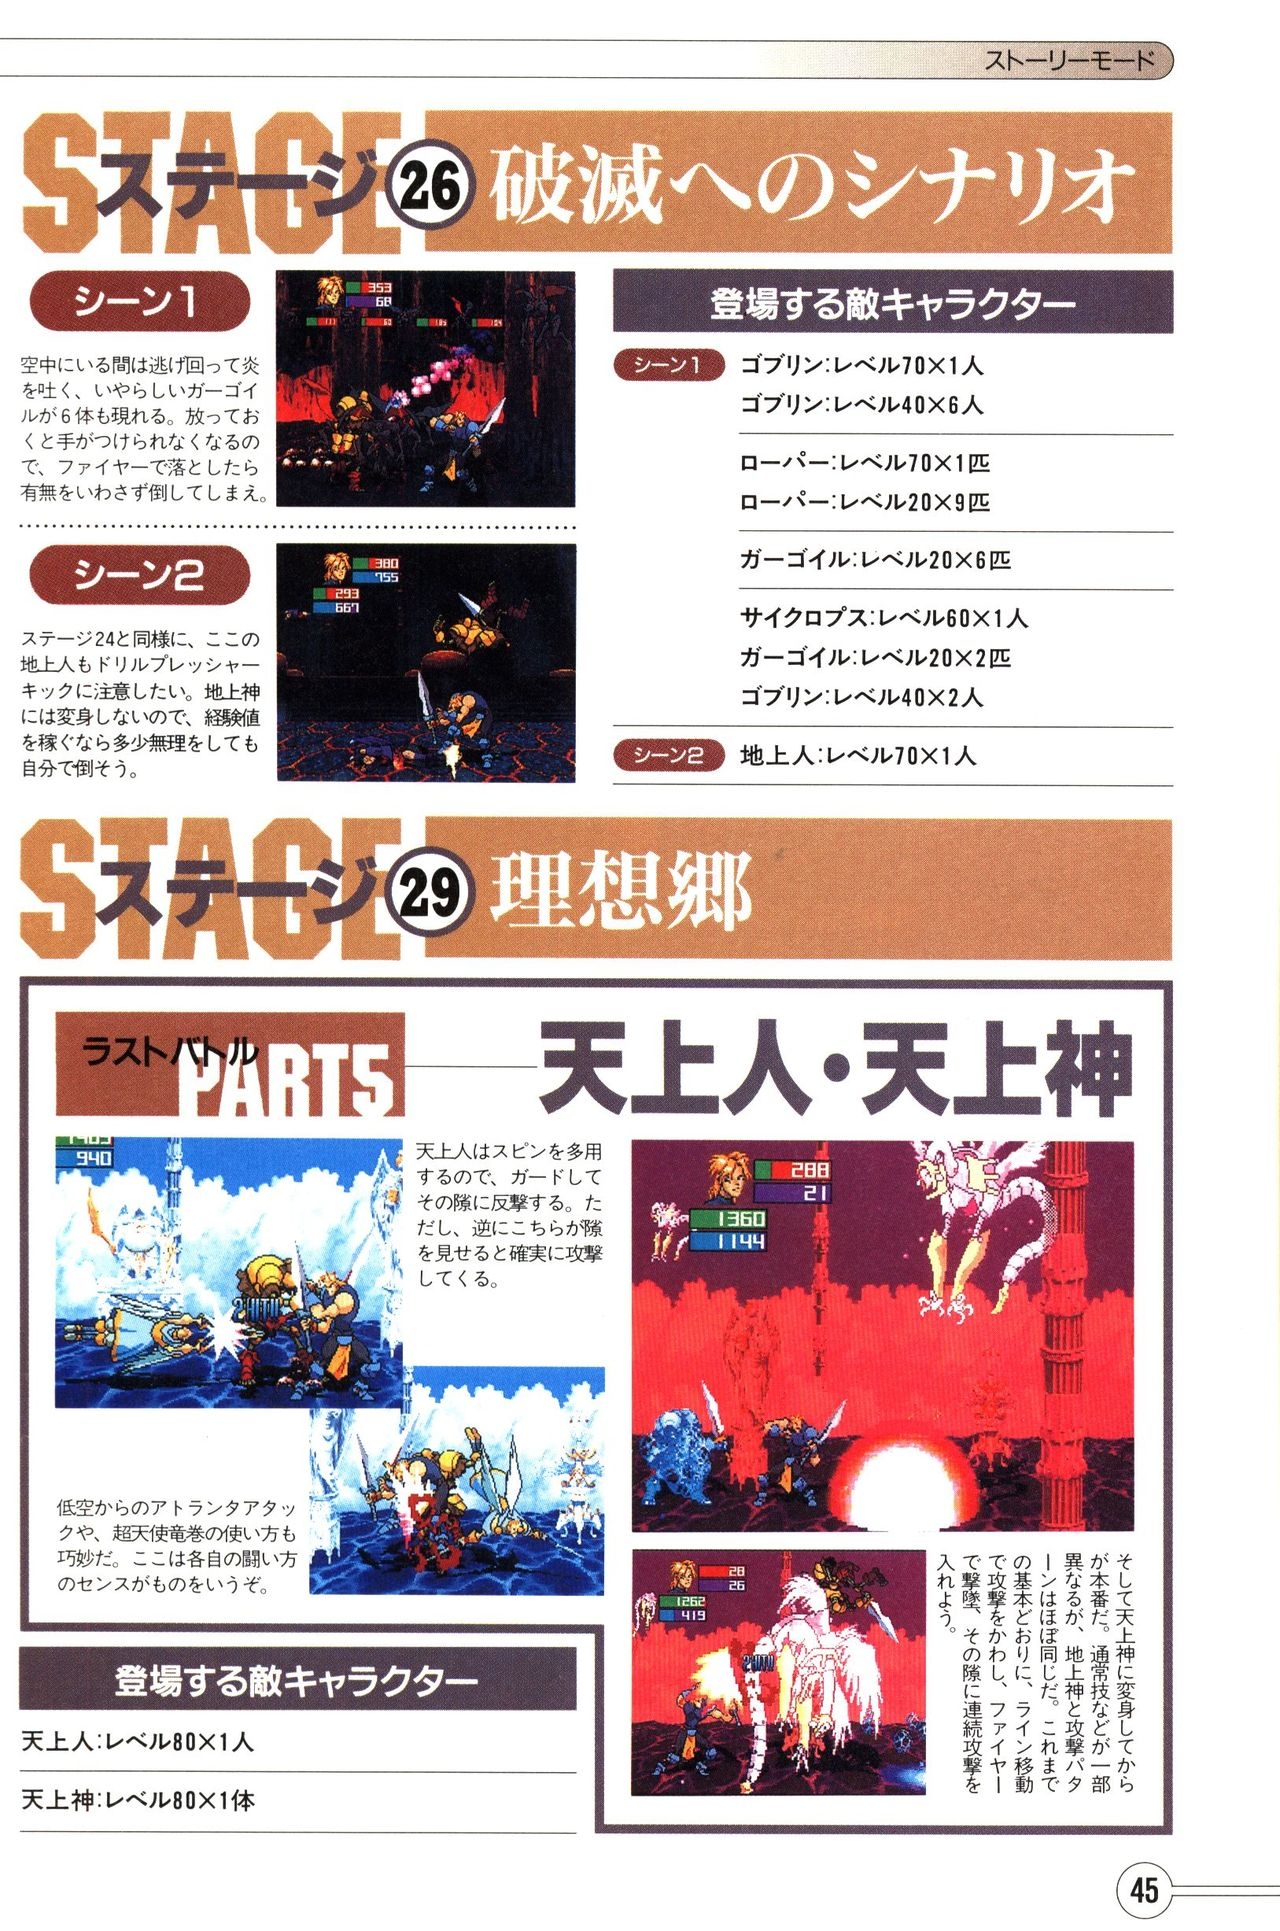 Guardian Heroes Perfect Guide (Sega Saturn magazine books) 47